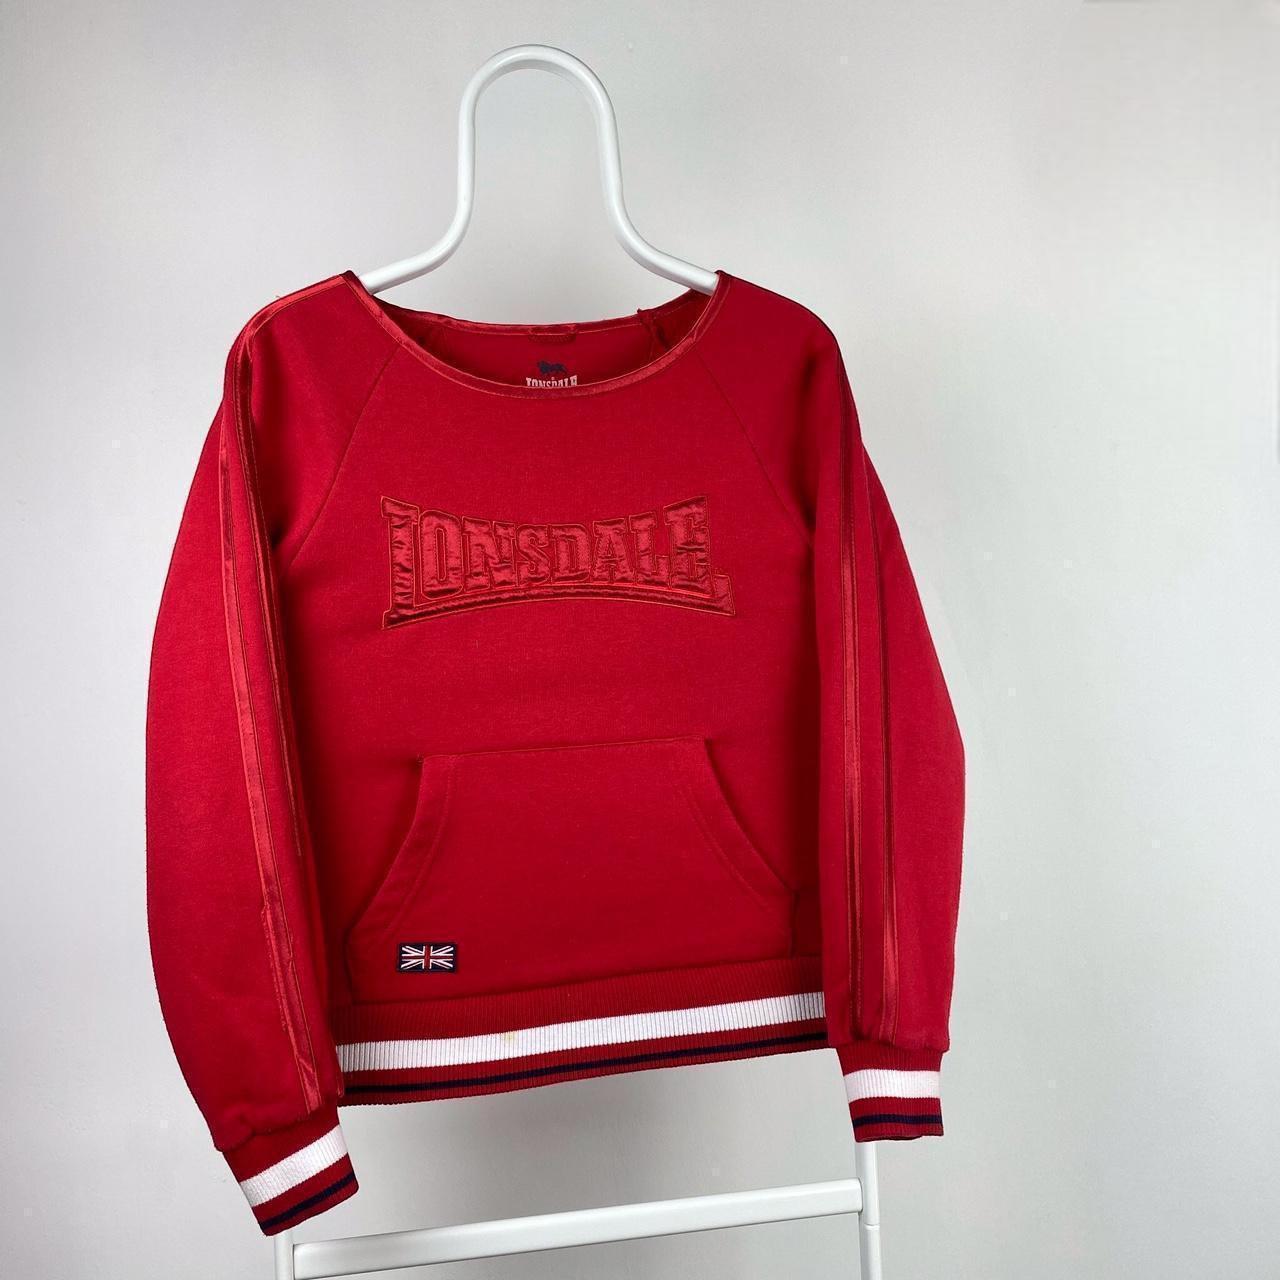 Vintage Lonsdale Embroidered Sweatshirt 📐Size: UK12... - Depop